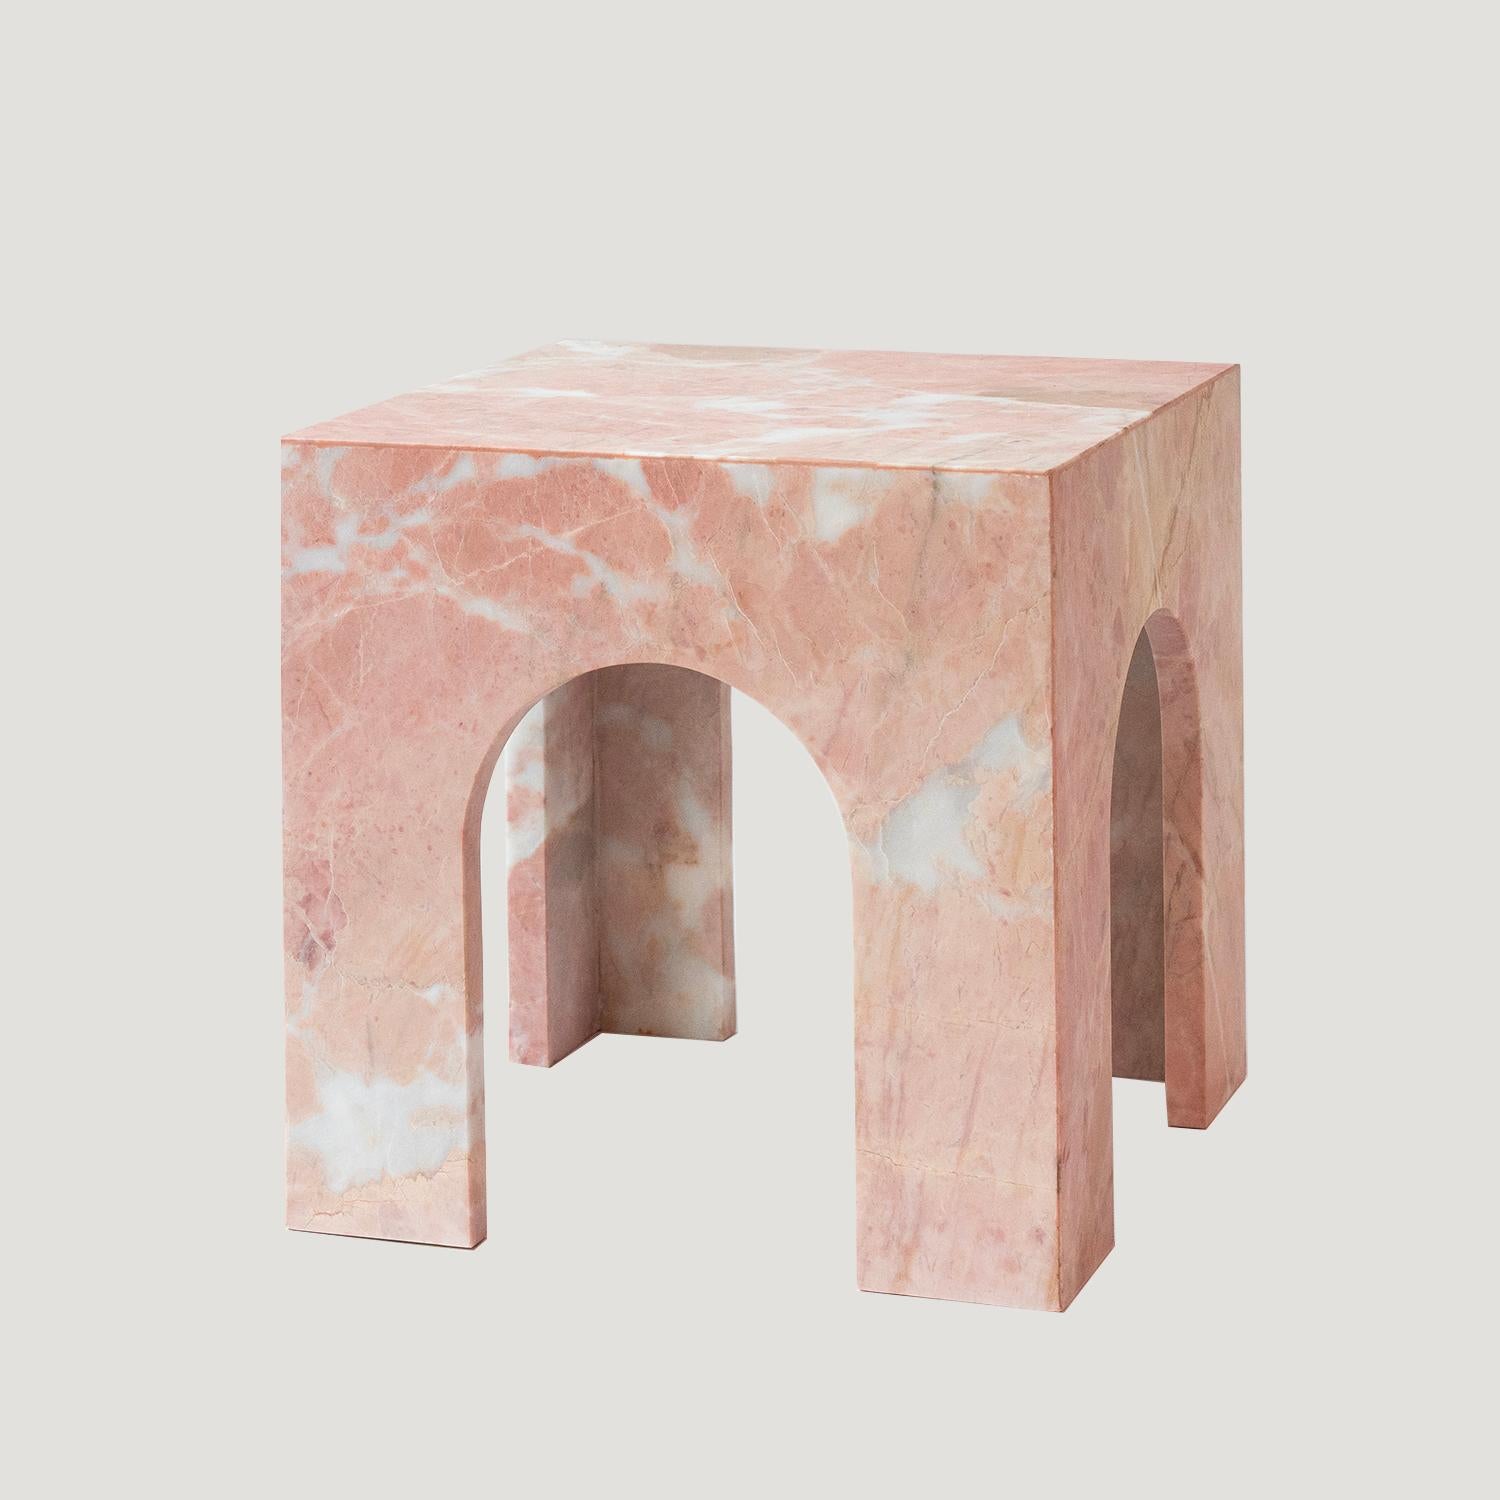 Ajoutez une touche d'élégance à n'importe quelle pièce avec cette superbe table d'appoint en marbre. Les côtés en forme d'arche de cette table d'appoint s'accordent avec une variété d'esthétiques d'intérieur, du traditionnel au contemporain.